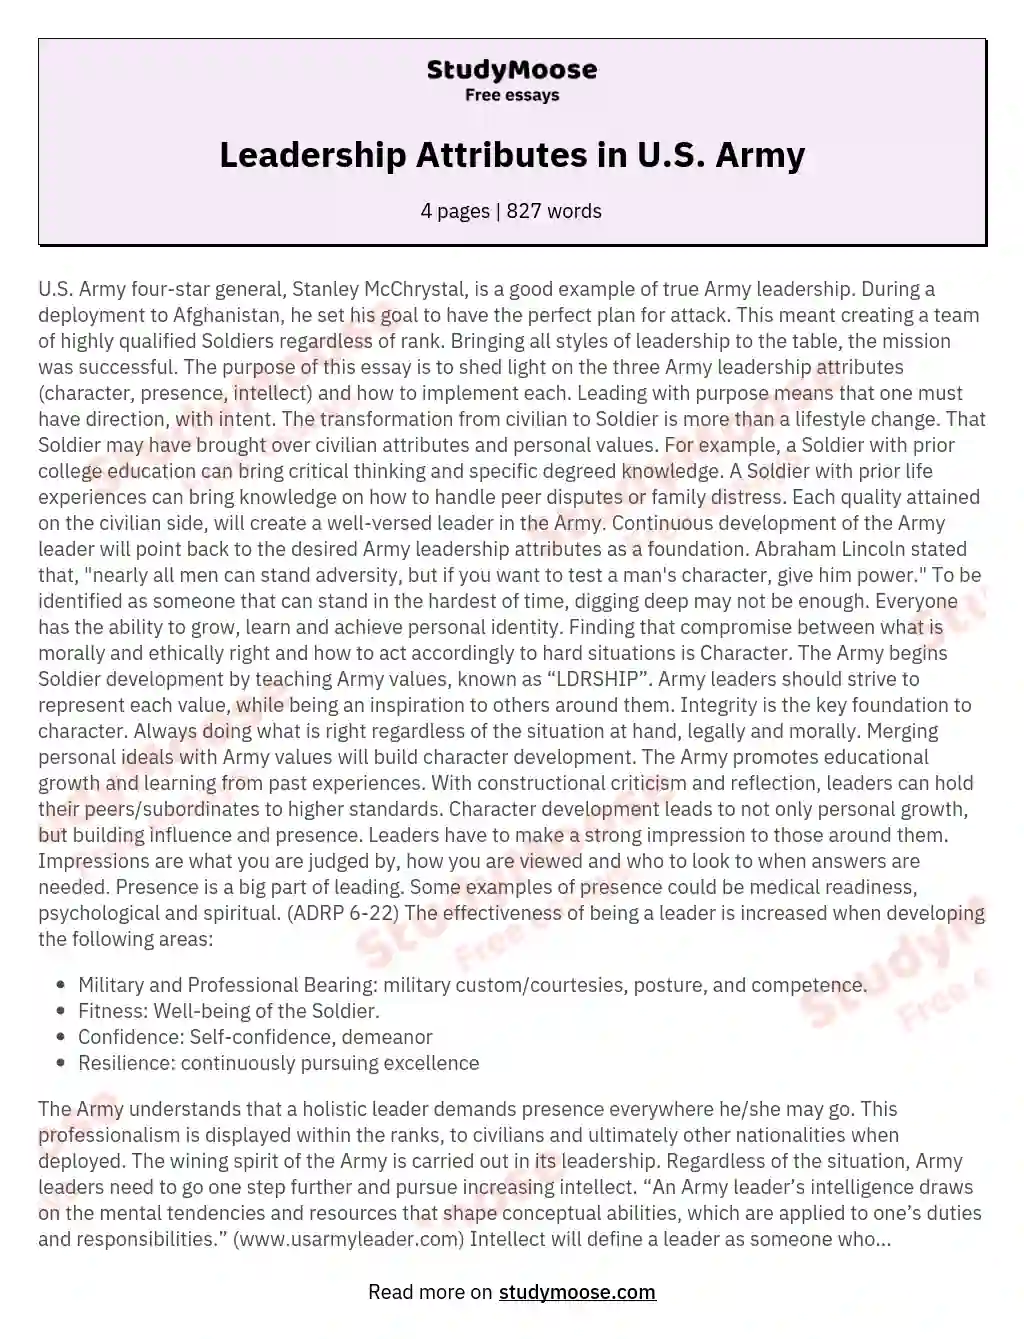 Leadership Attributes in U.S. Army